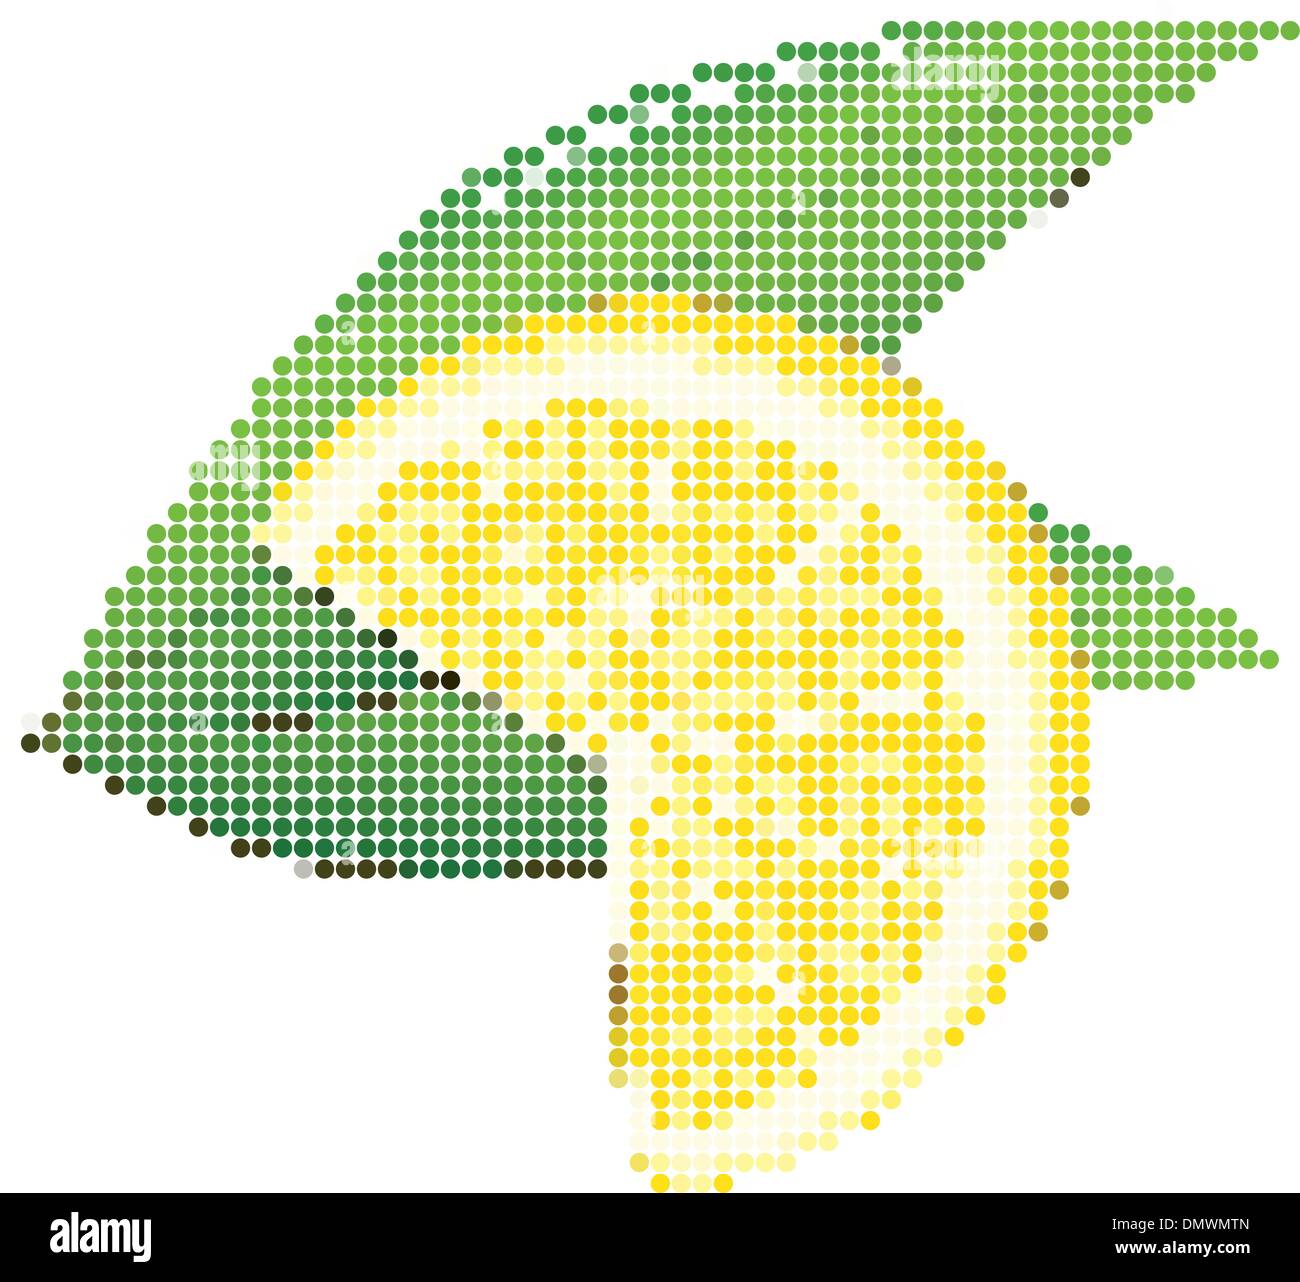 Dot Style Illustration of Lemon Stock Vector